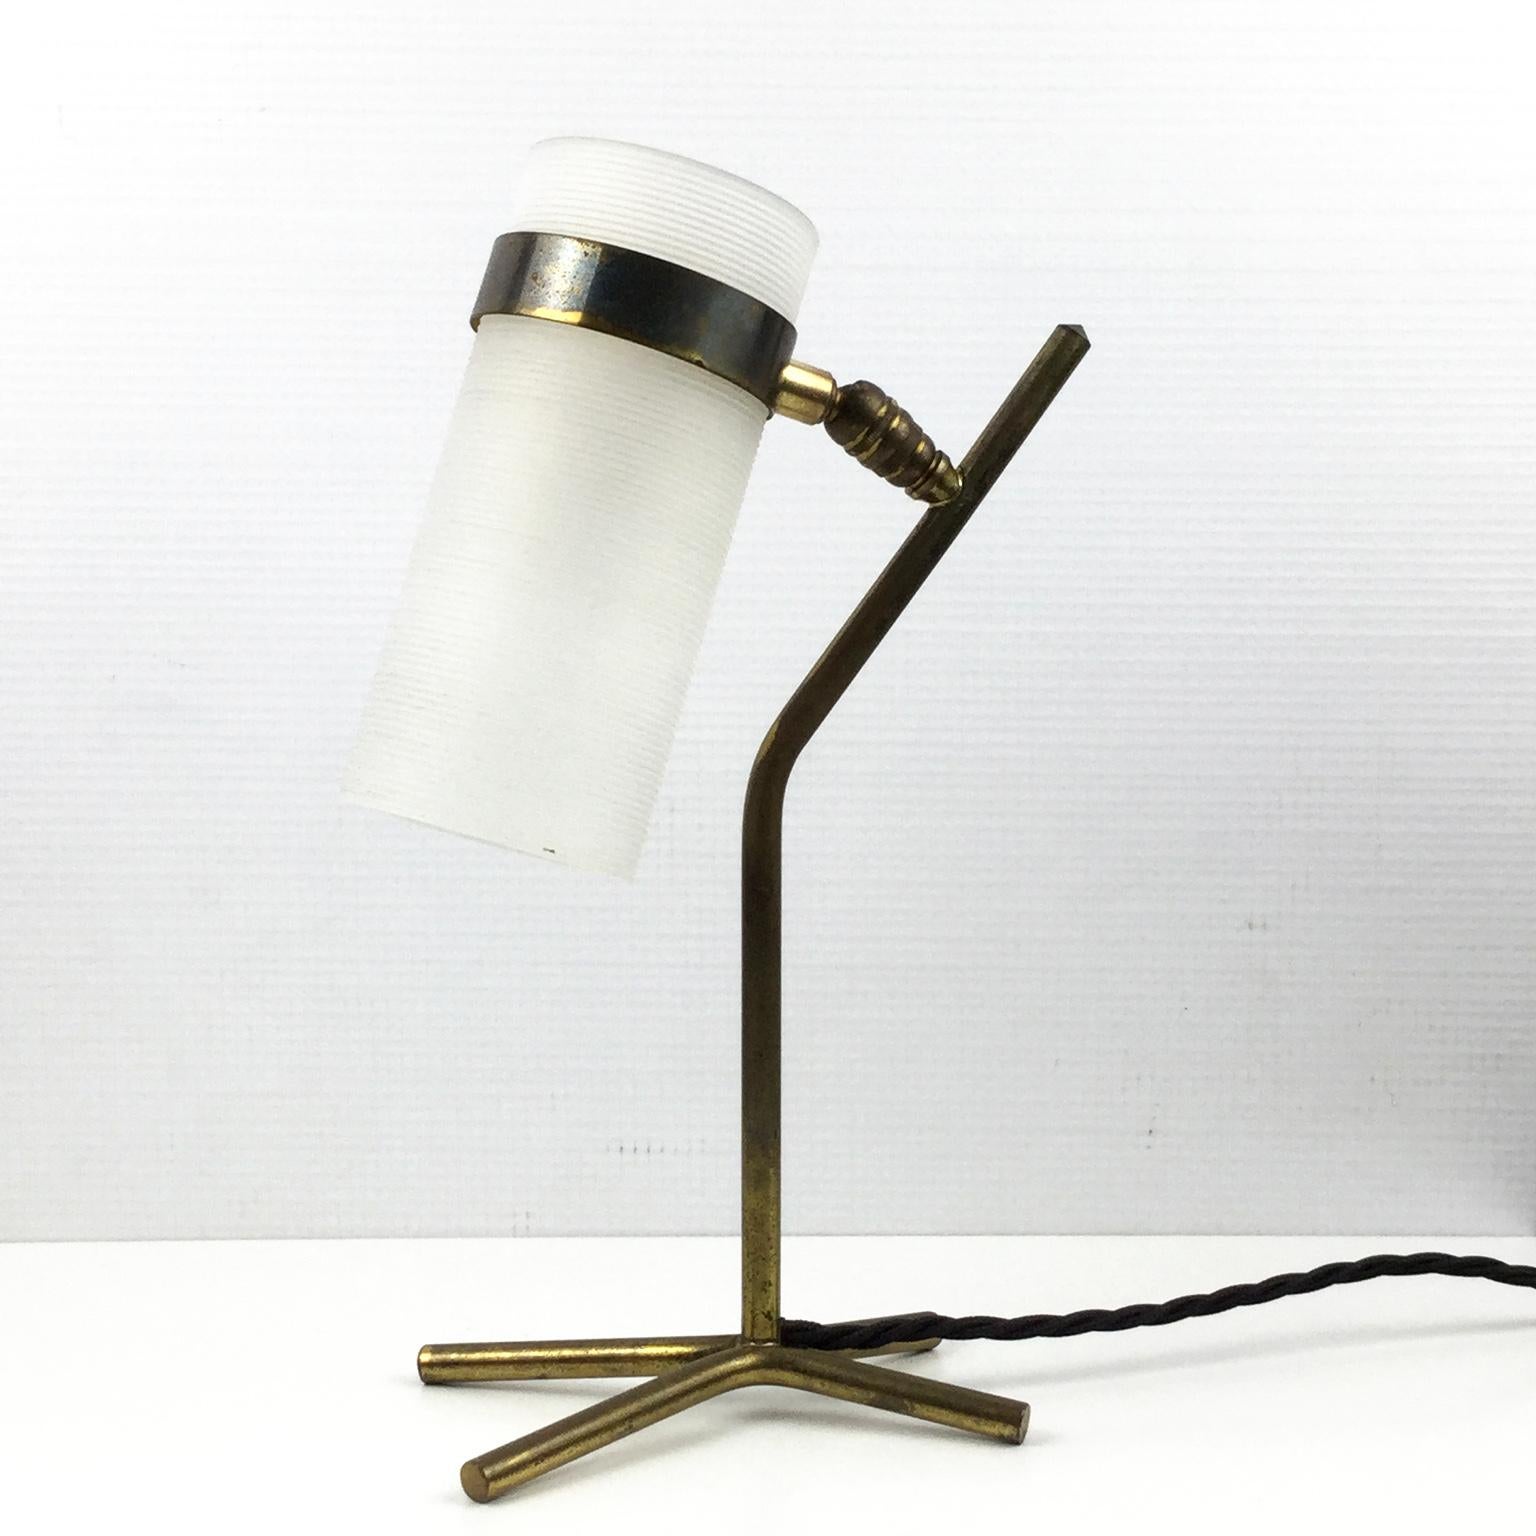 Tischlampe aus den 1950er Jahren, herausgegeben von Maison Caillat und Pierre Guariche in Zusammenarbeit mit Jean Boris Lacroix zugeschrieben.
X-förmiger Sockel aus Messing mit verstellbarem, gestreiften Perplex
Umverdrahtet mit einer kleinen